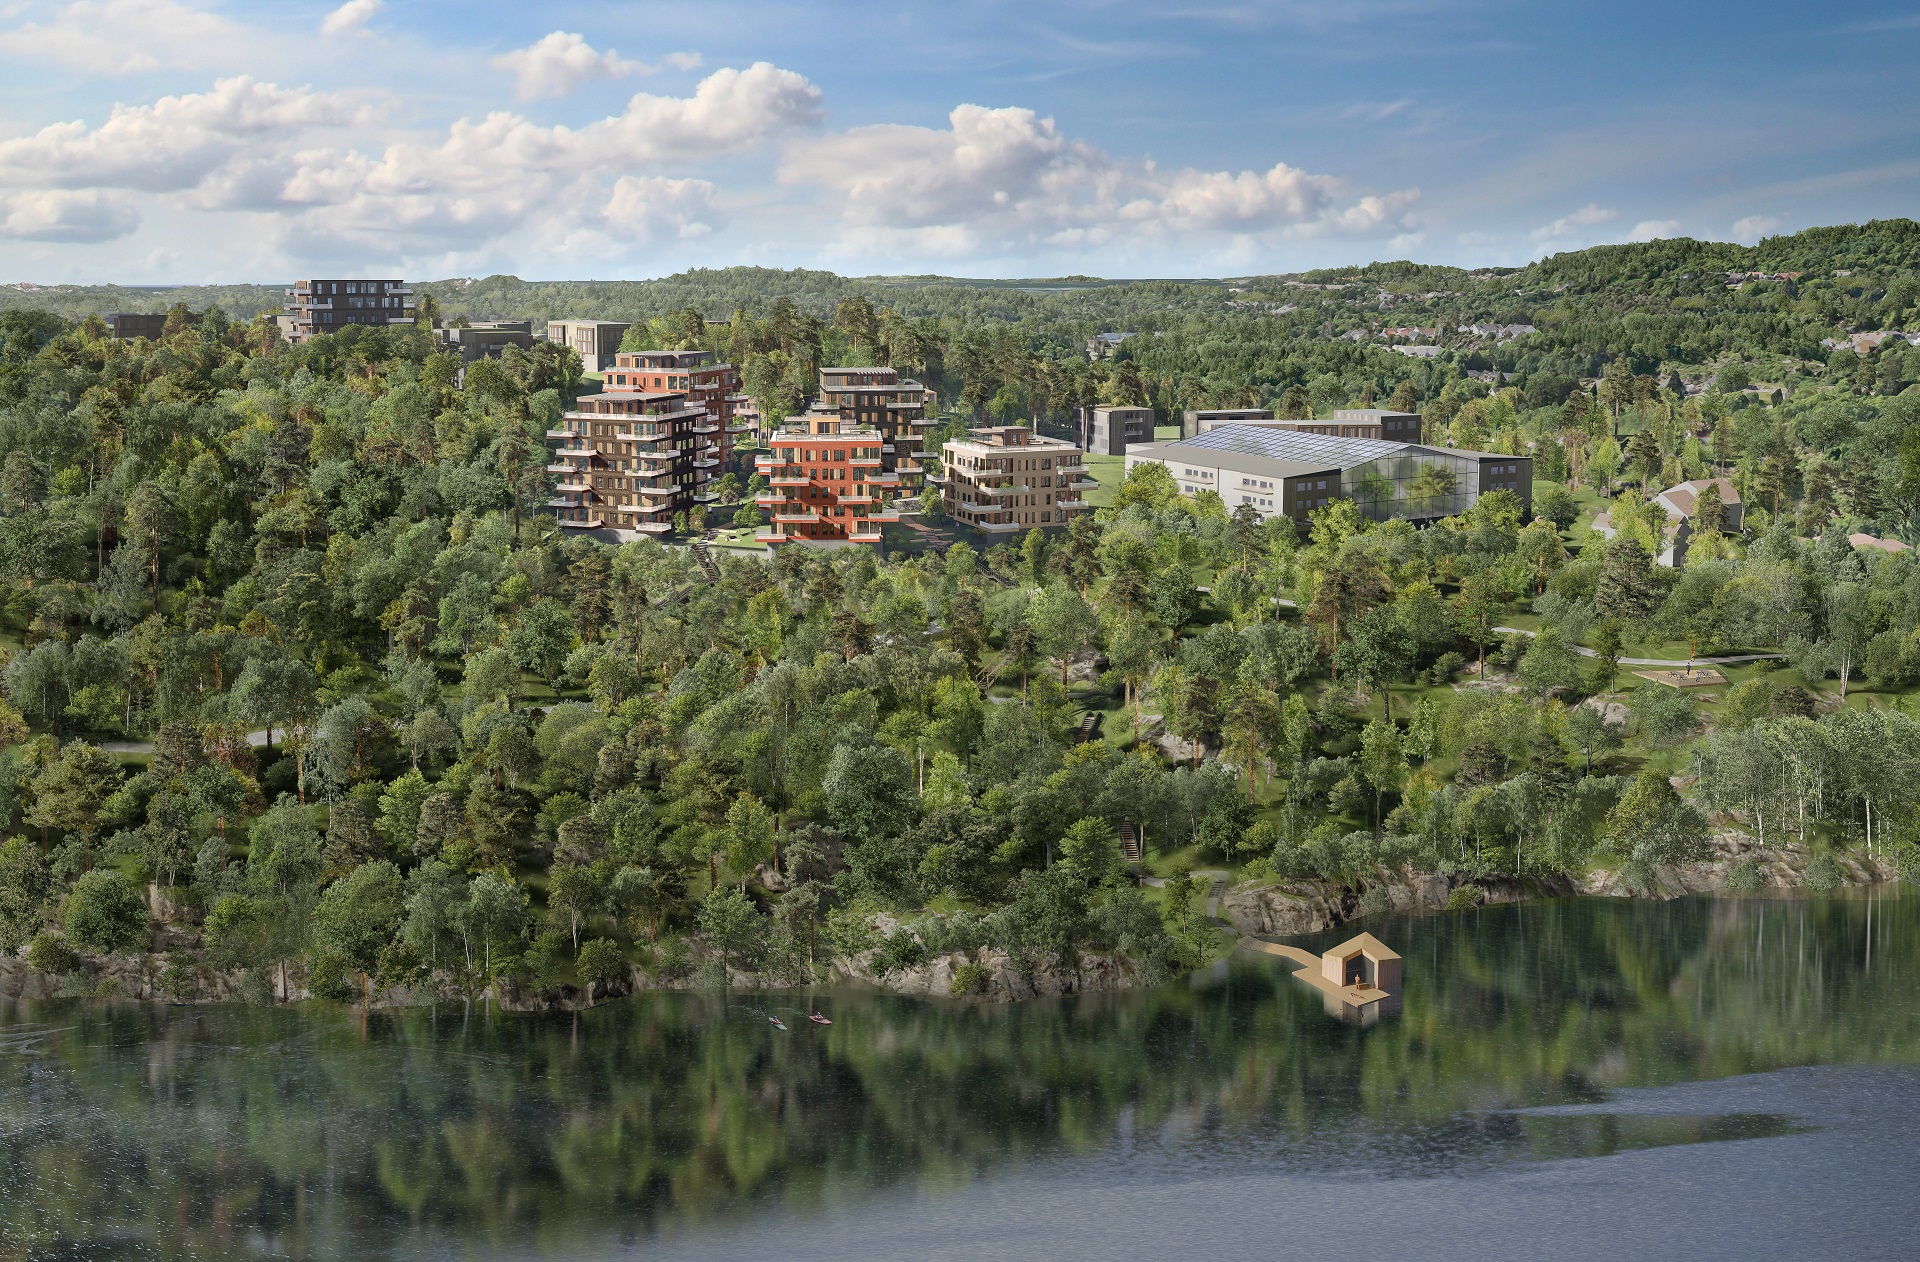 LINK blir arkitekten bak omfattende boligutvikling i Kristiansand